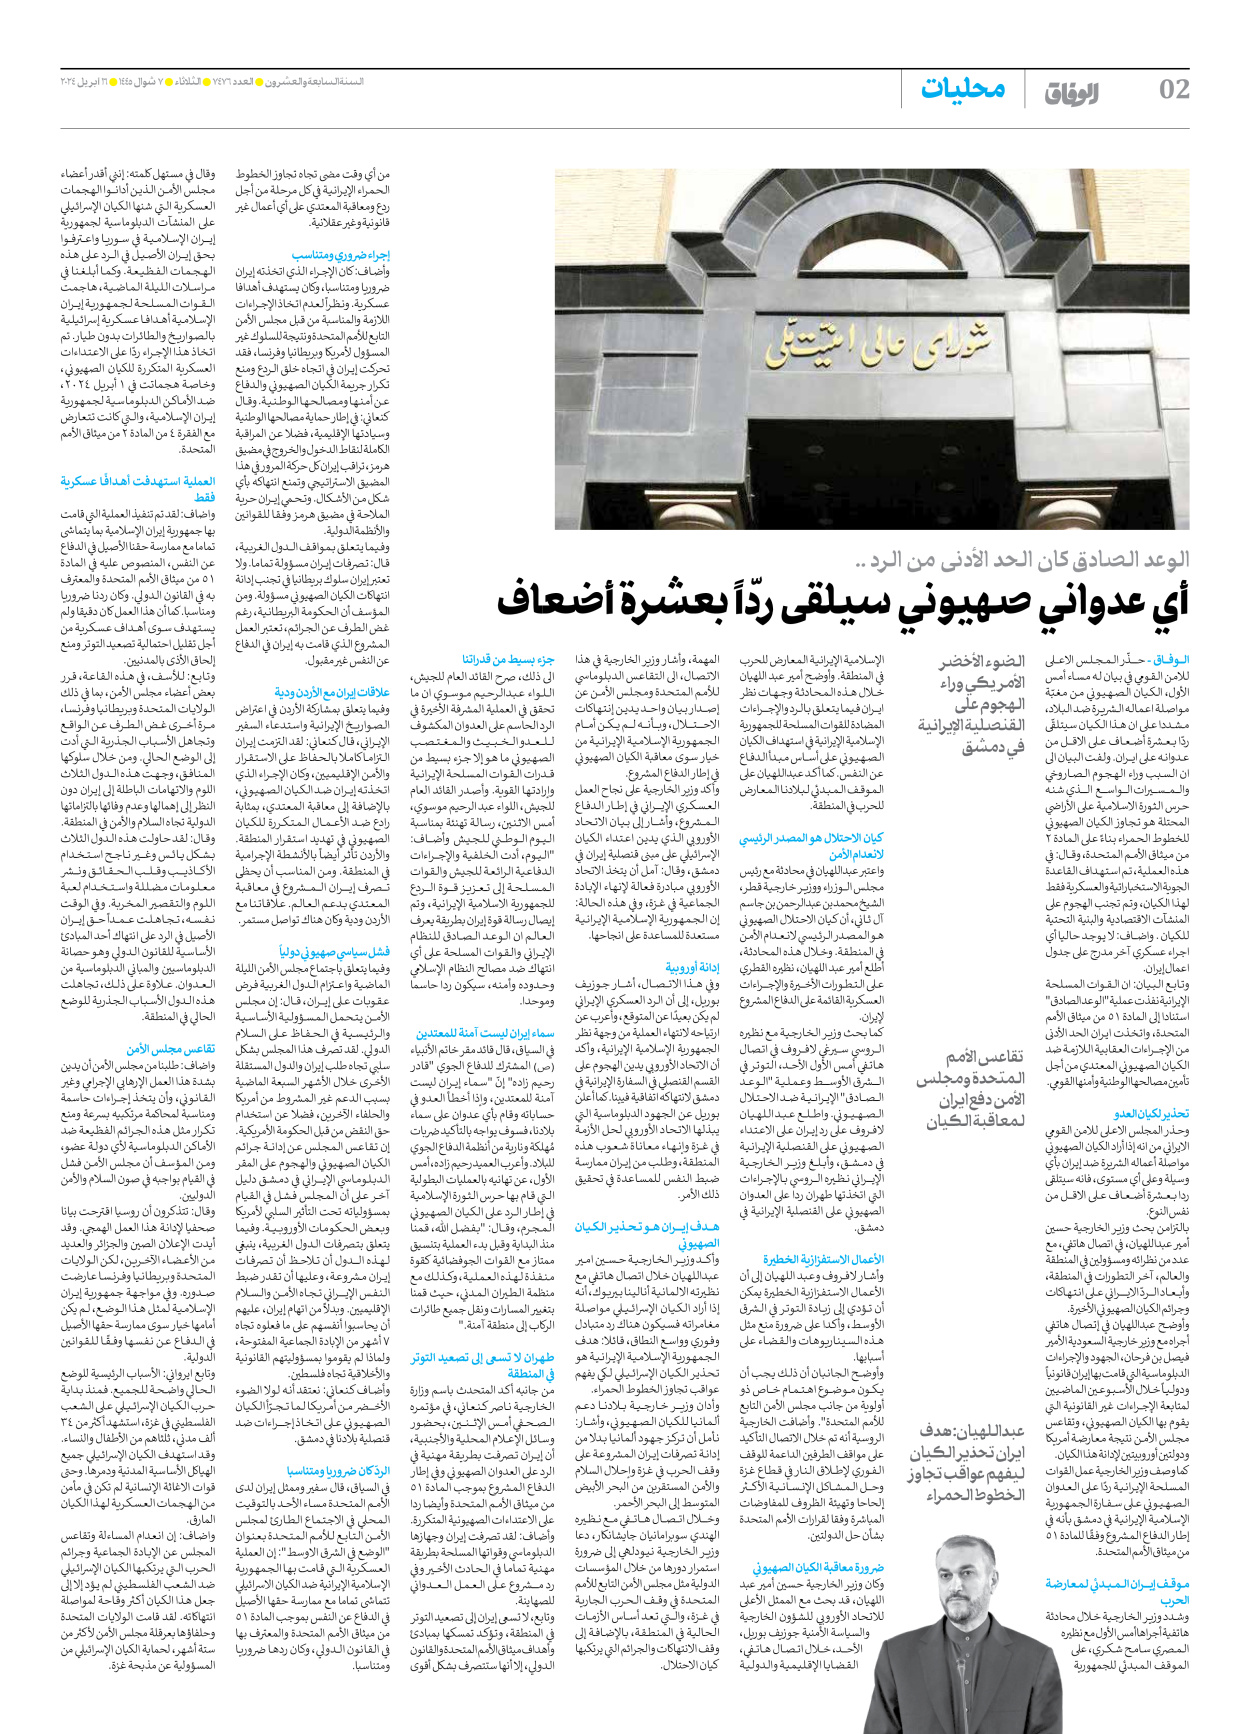 صحیفة ایران الدولیة الوفاق - العدد سبعة آلاف وأربعمائة وستة وسبعون - ١٦ أبريل ٢٠٢٤ - الصفحة ۲